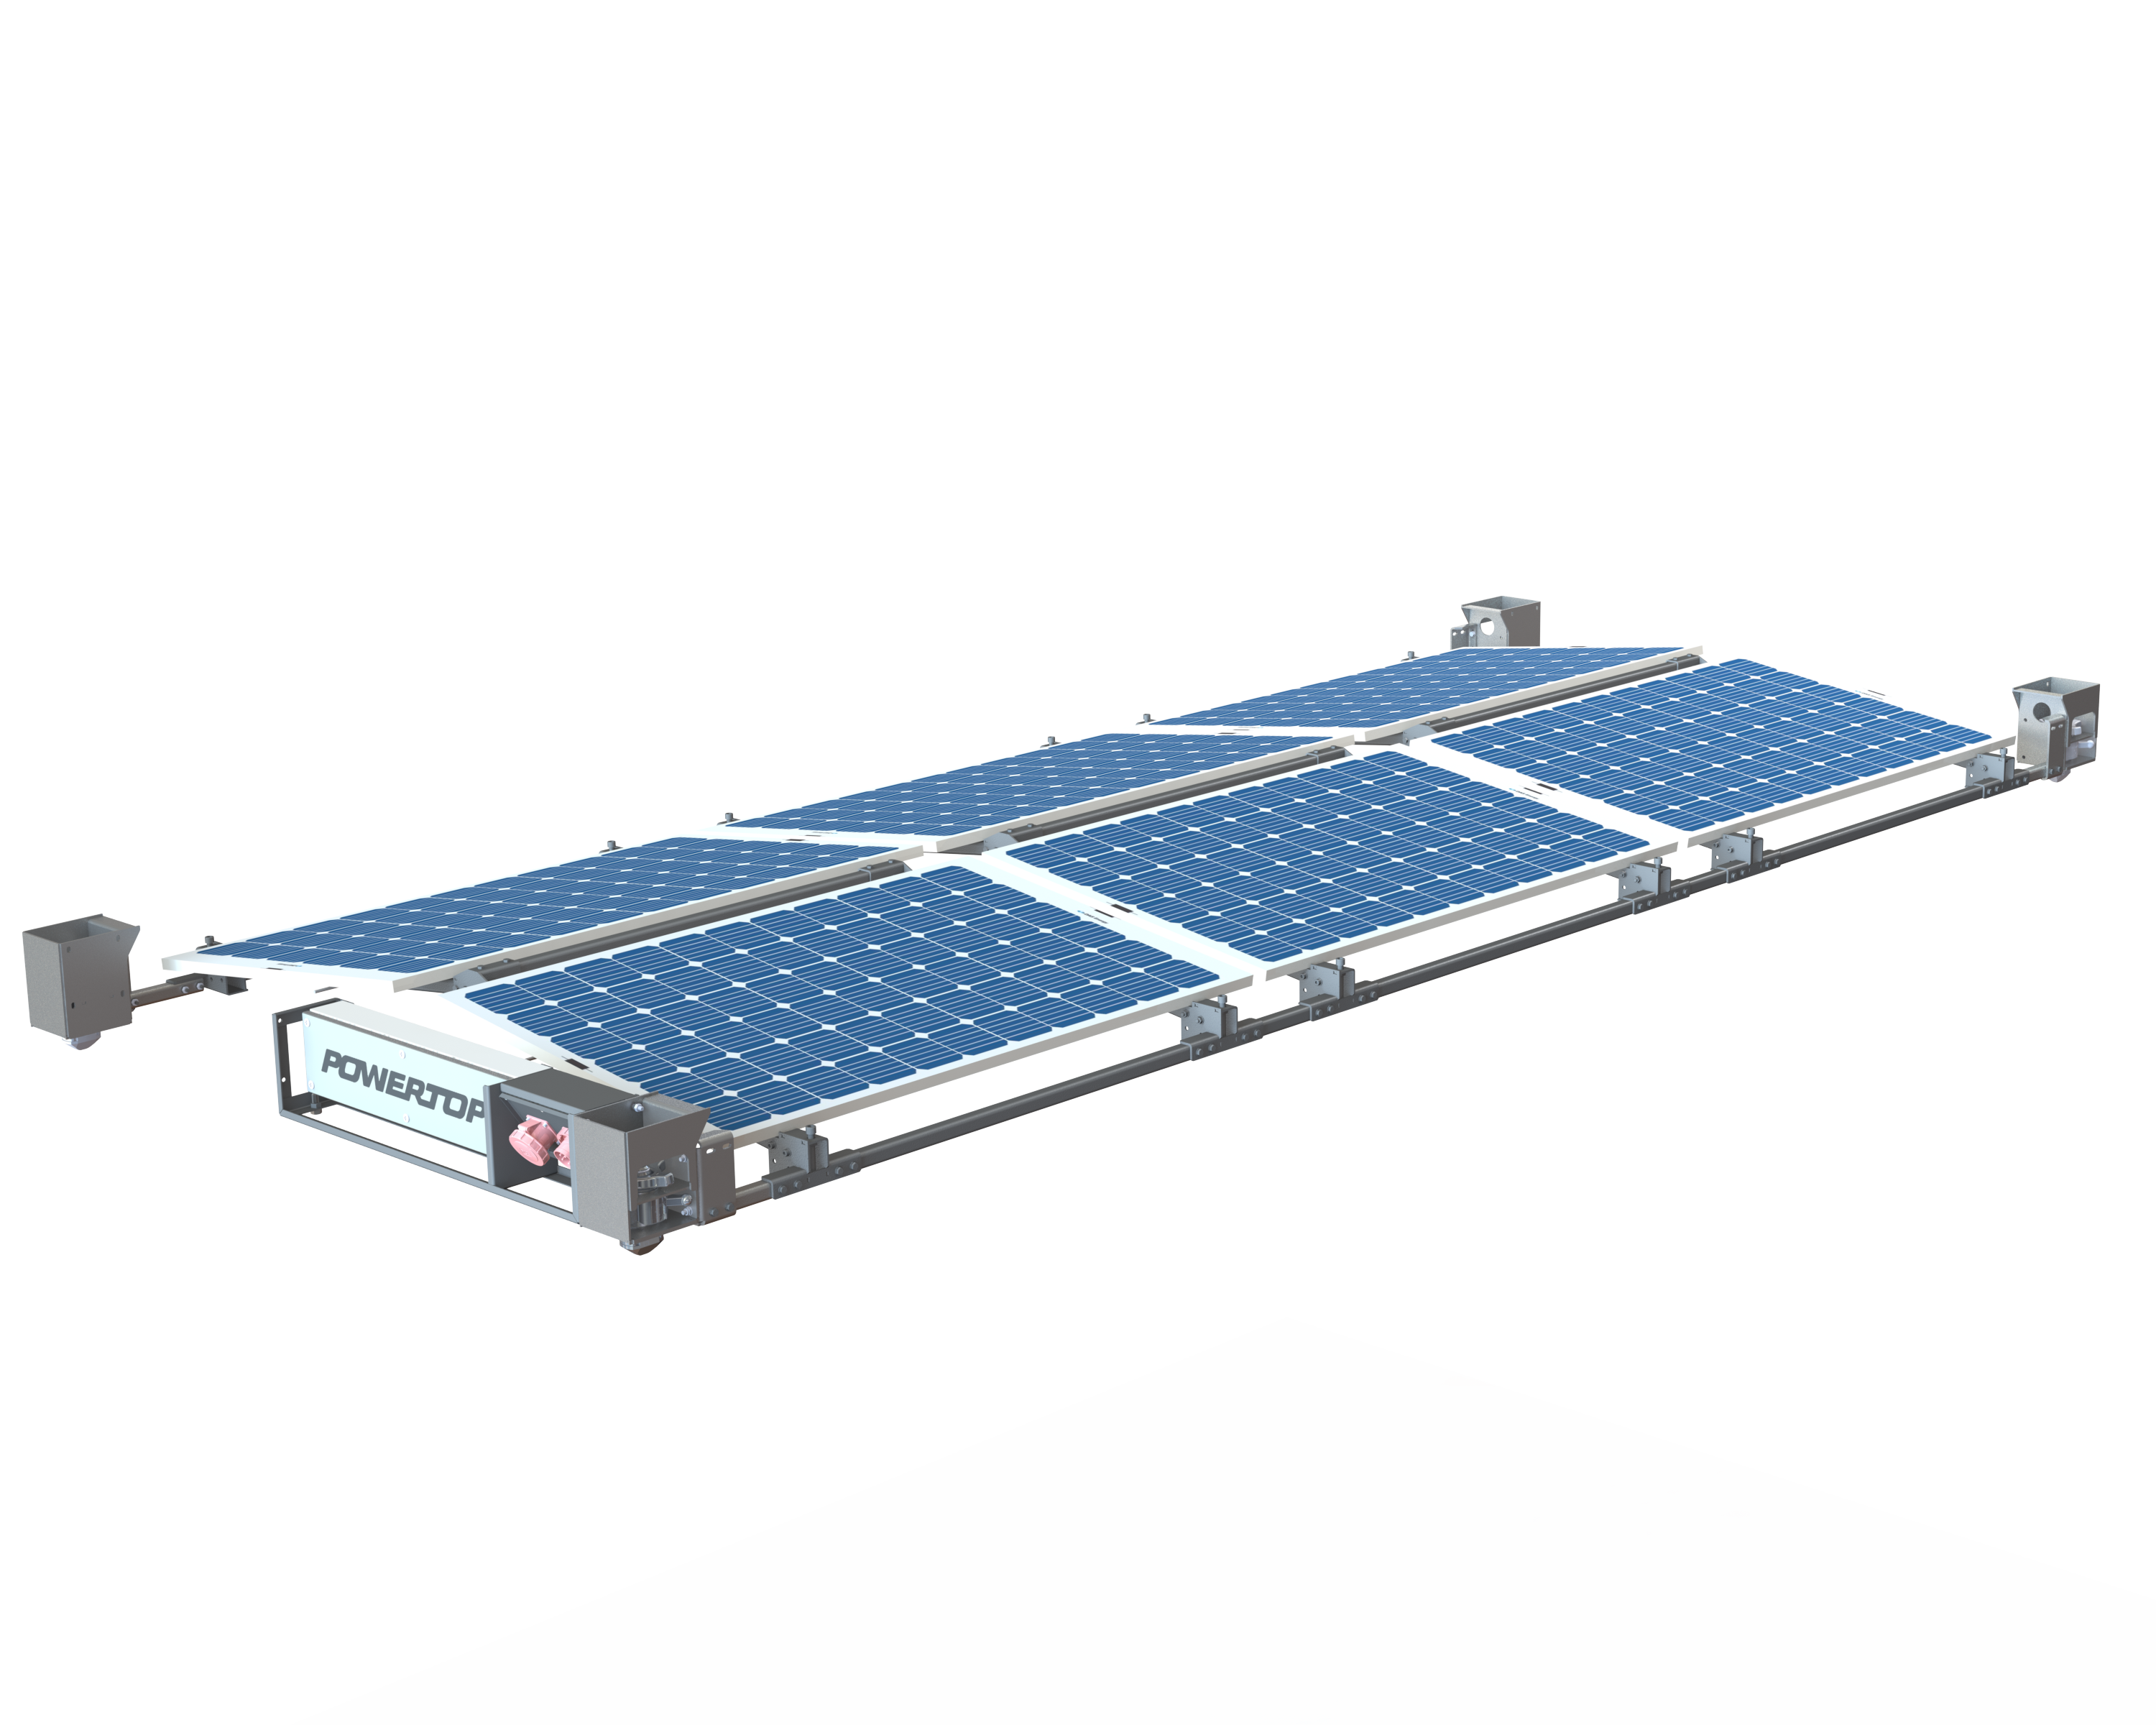 POWERTOP FLEX, Plug & Play, Solarstrom für Containerdächer, ab 2,2 kWp, Solarmodule, Rahmenkonstruktion, Wechselrichter, E-Box